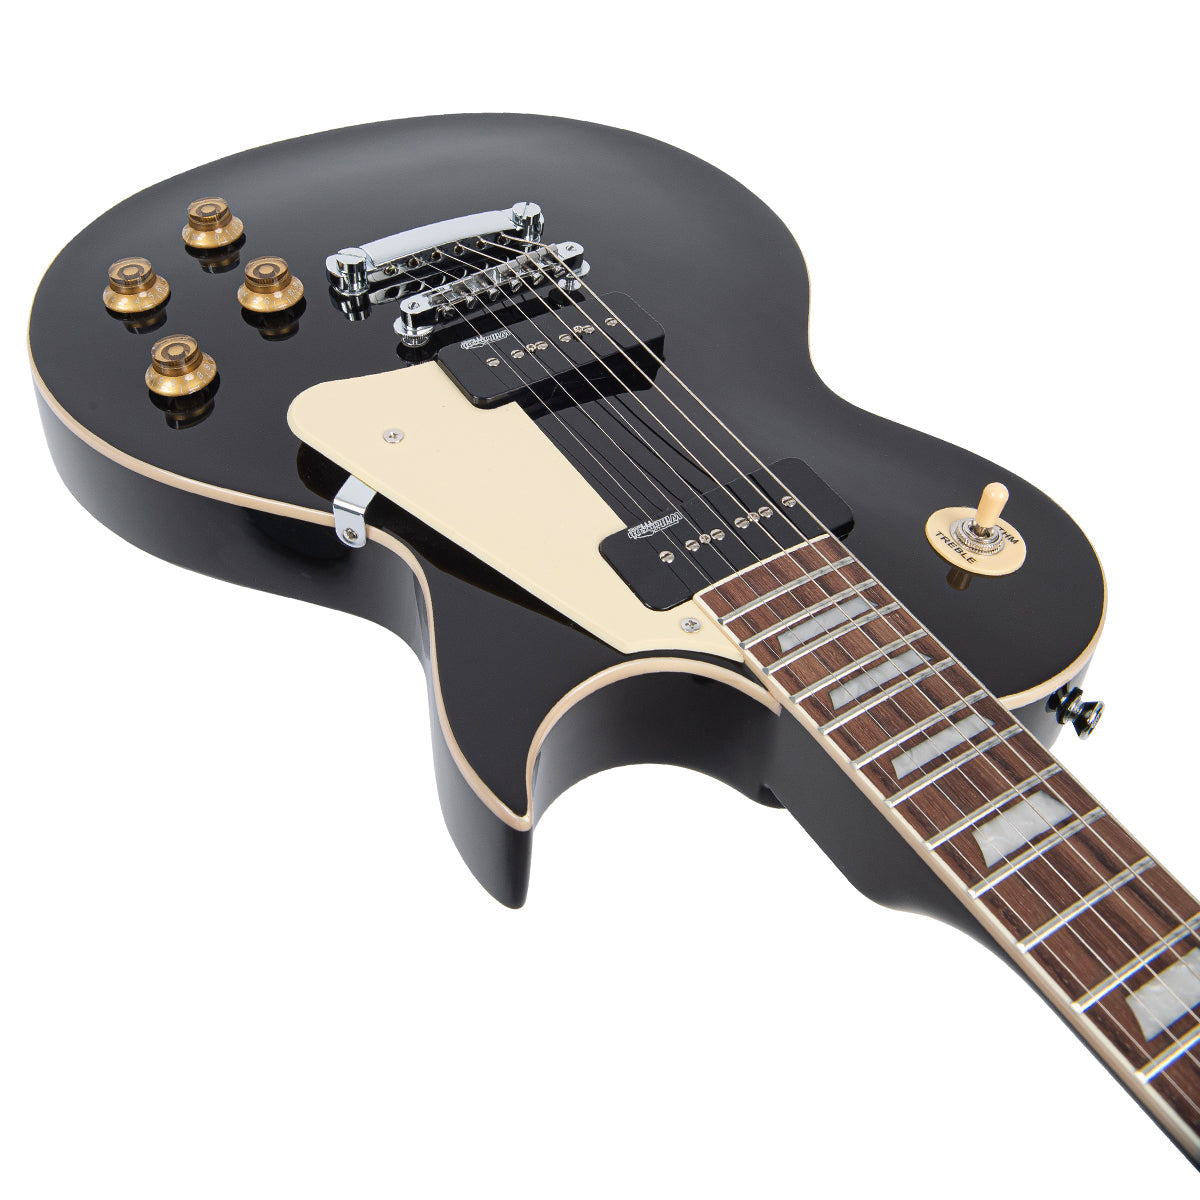 Vintage V100P ReIssued Electric Guitar ~ Boulevard Black, Electric Guitar for sale at Richards Guitars.